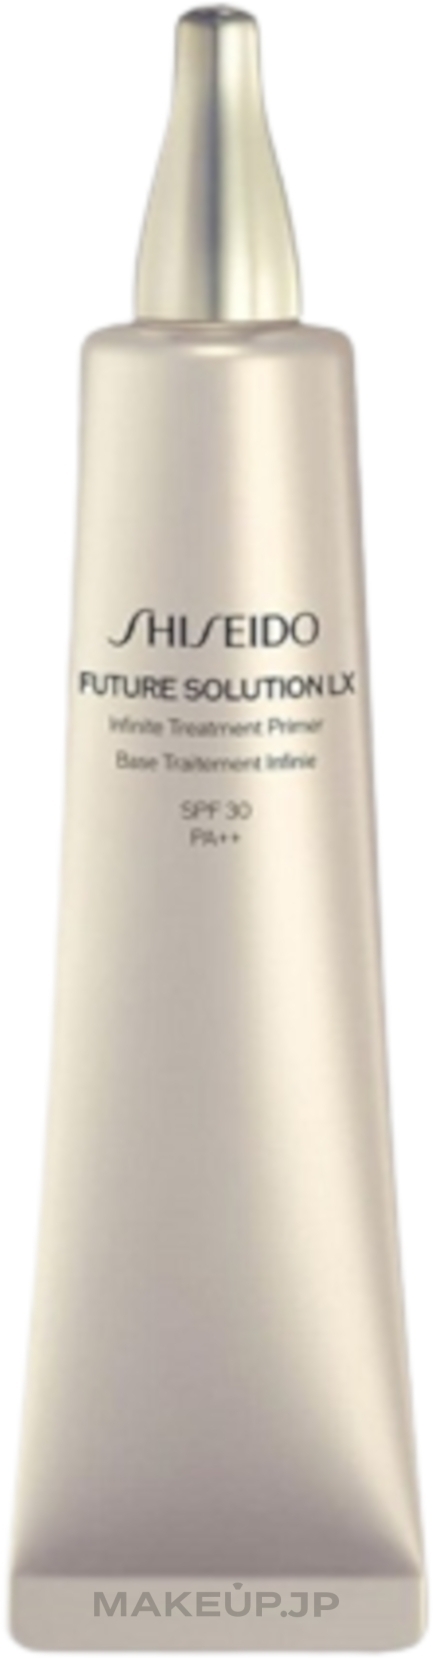 Primer - Shiseido Future Solution LX Infinite Treatment Primer SPF30 PA++ — photo 40 ml